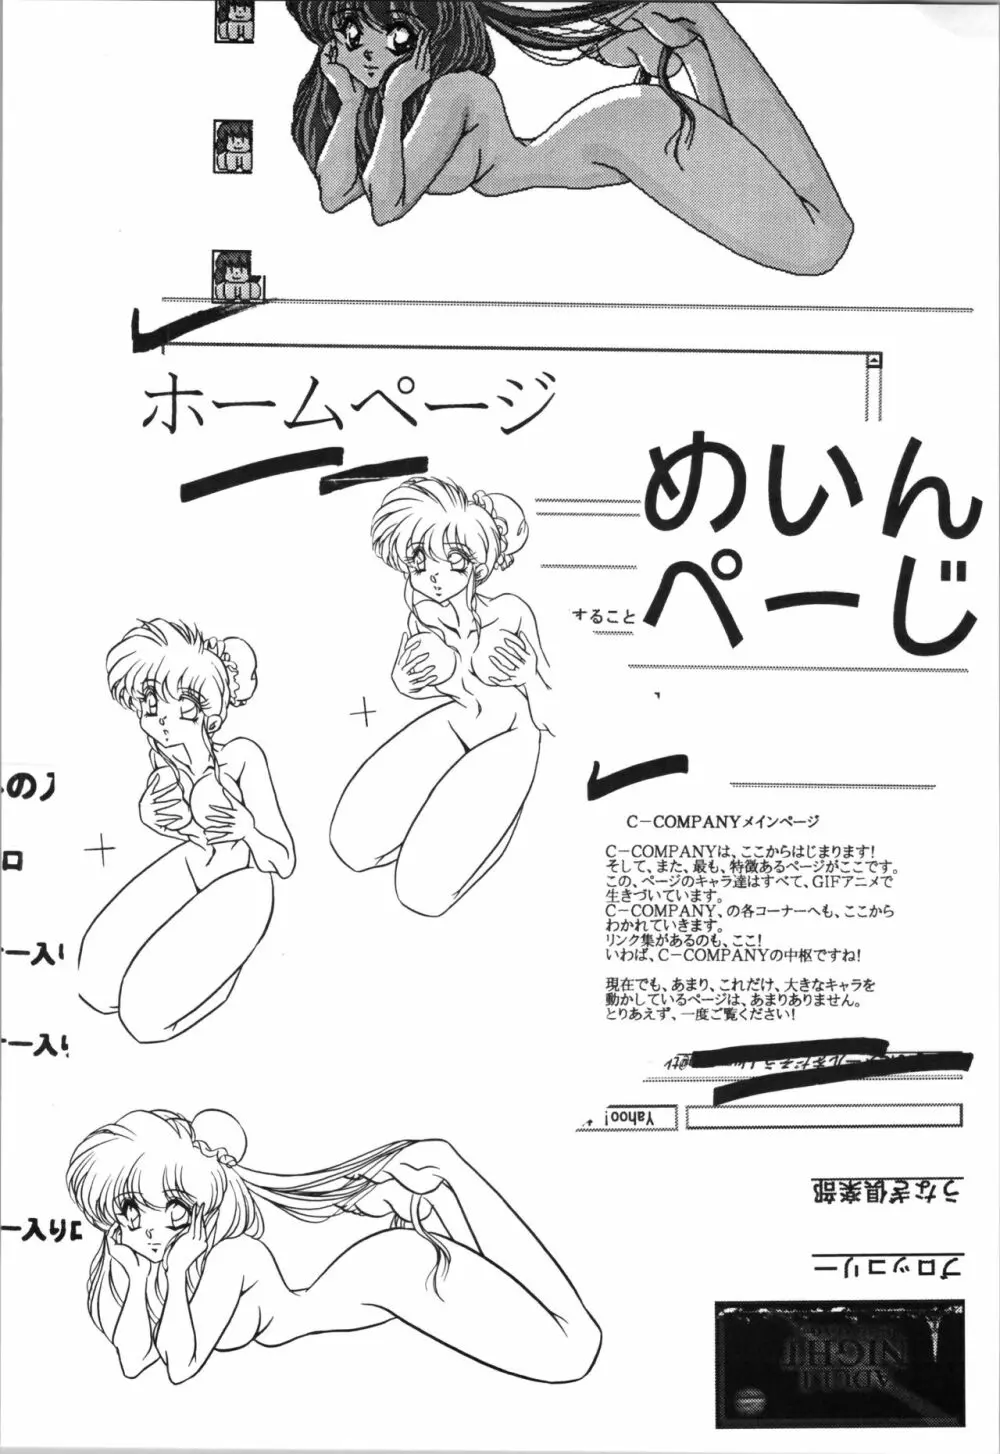 C-COMPANY ぷちぐまブック4 14ページ